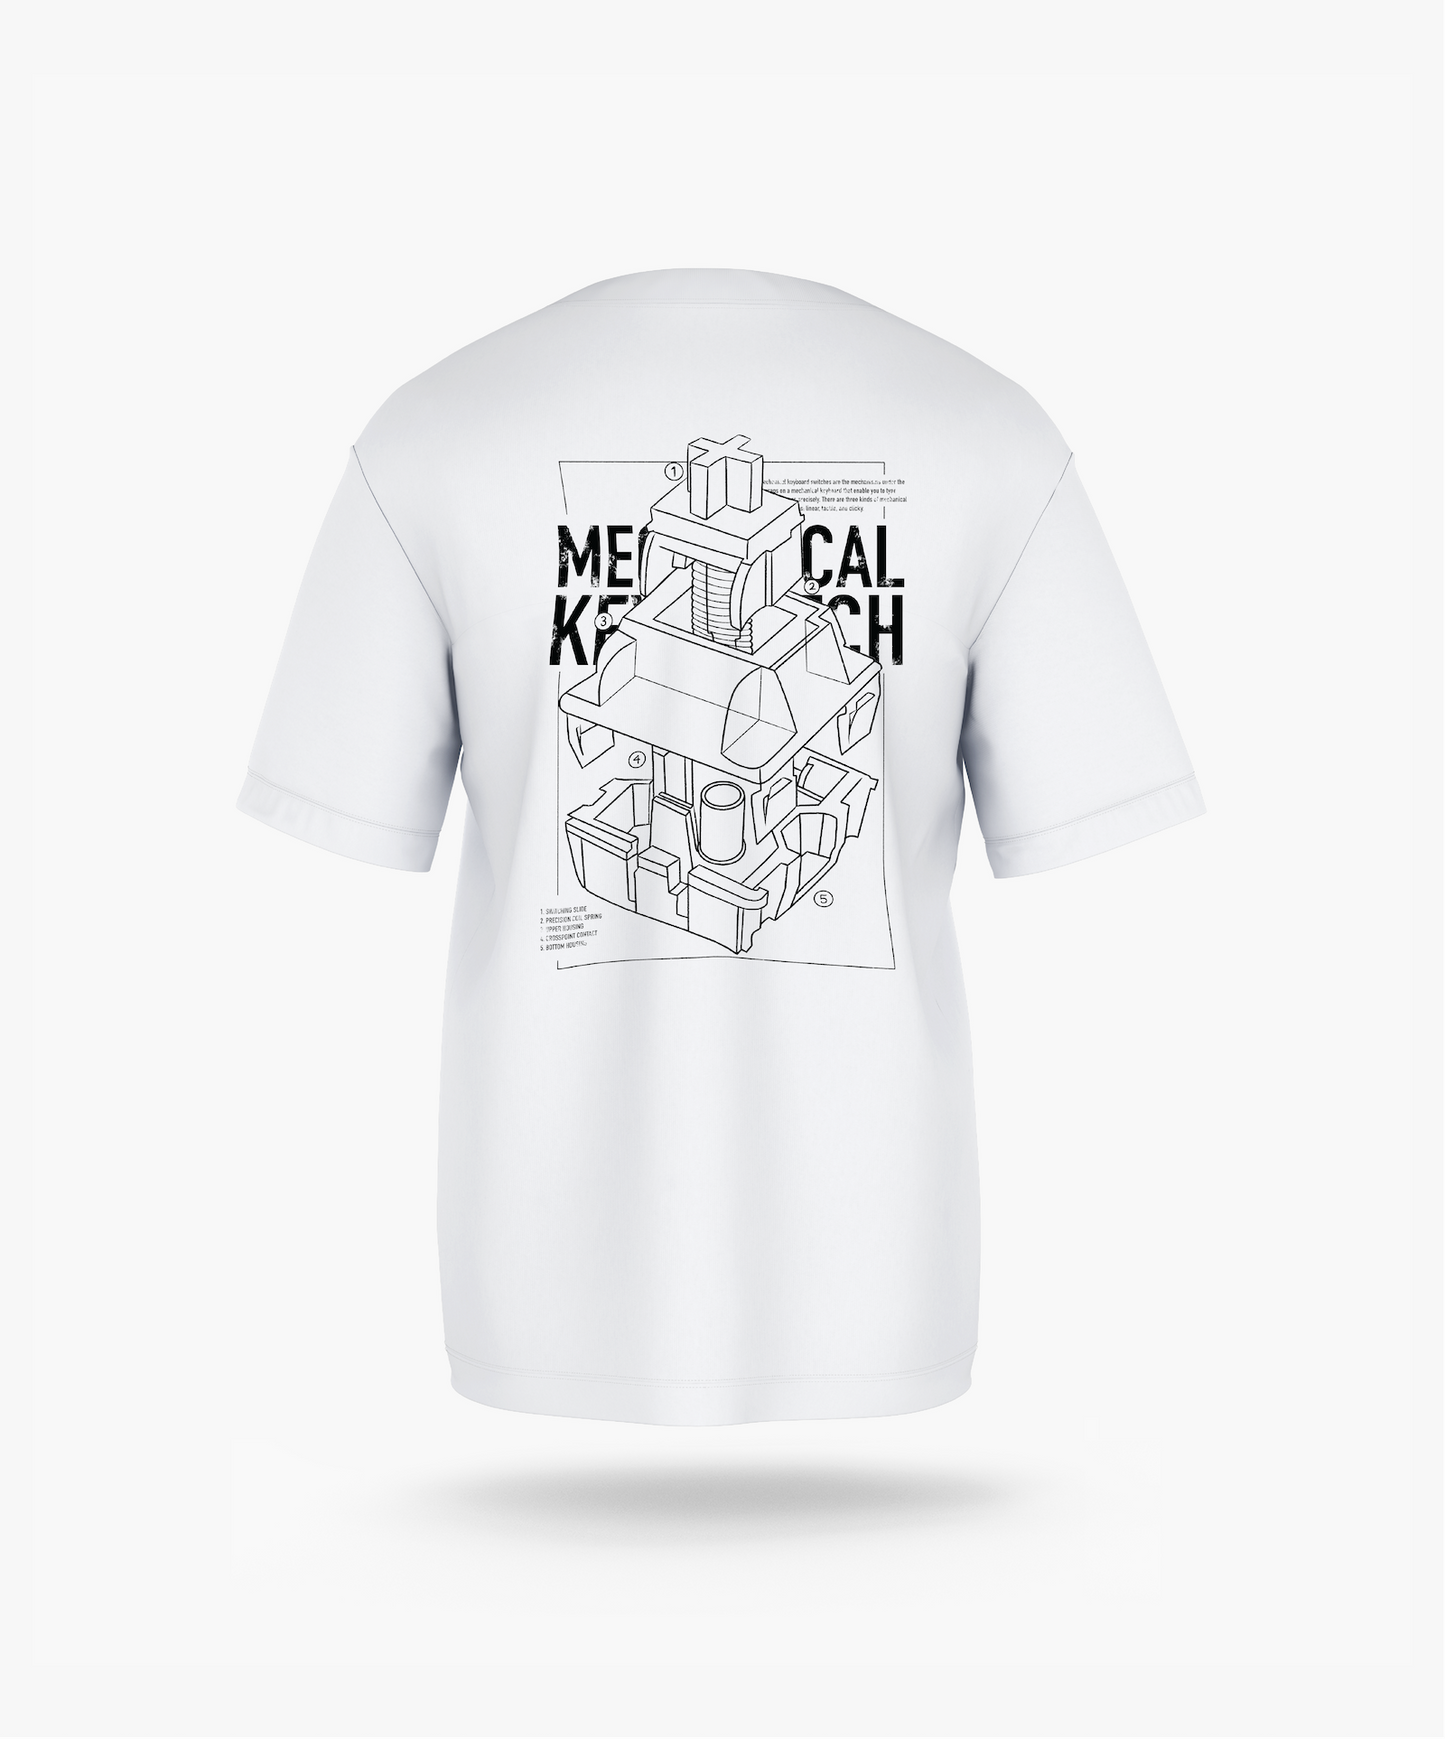 Patent Key Switch T-Shirt